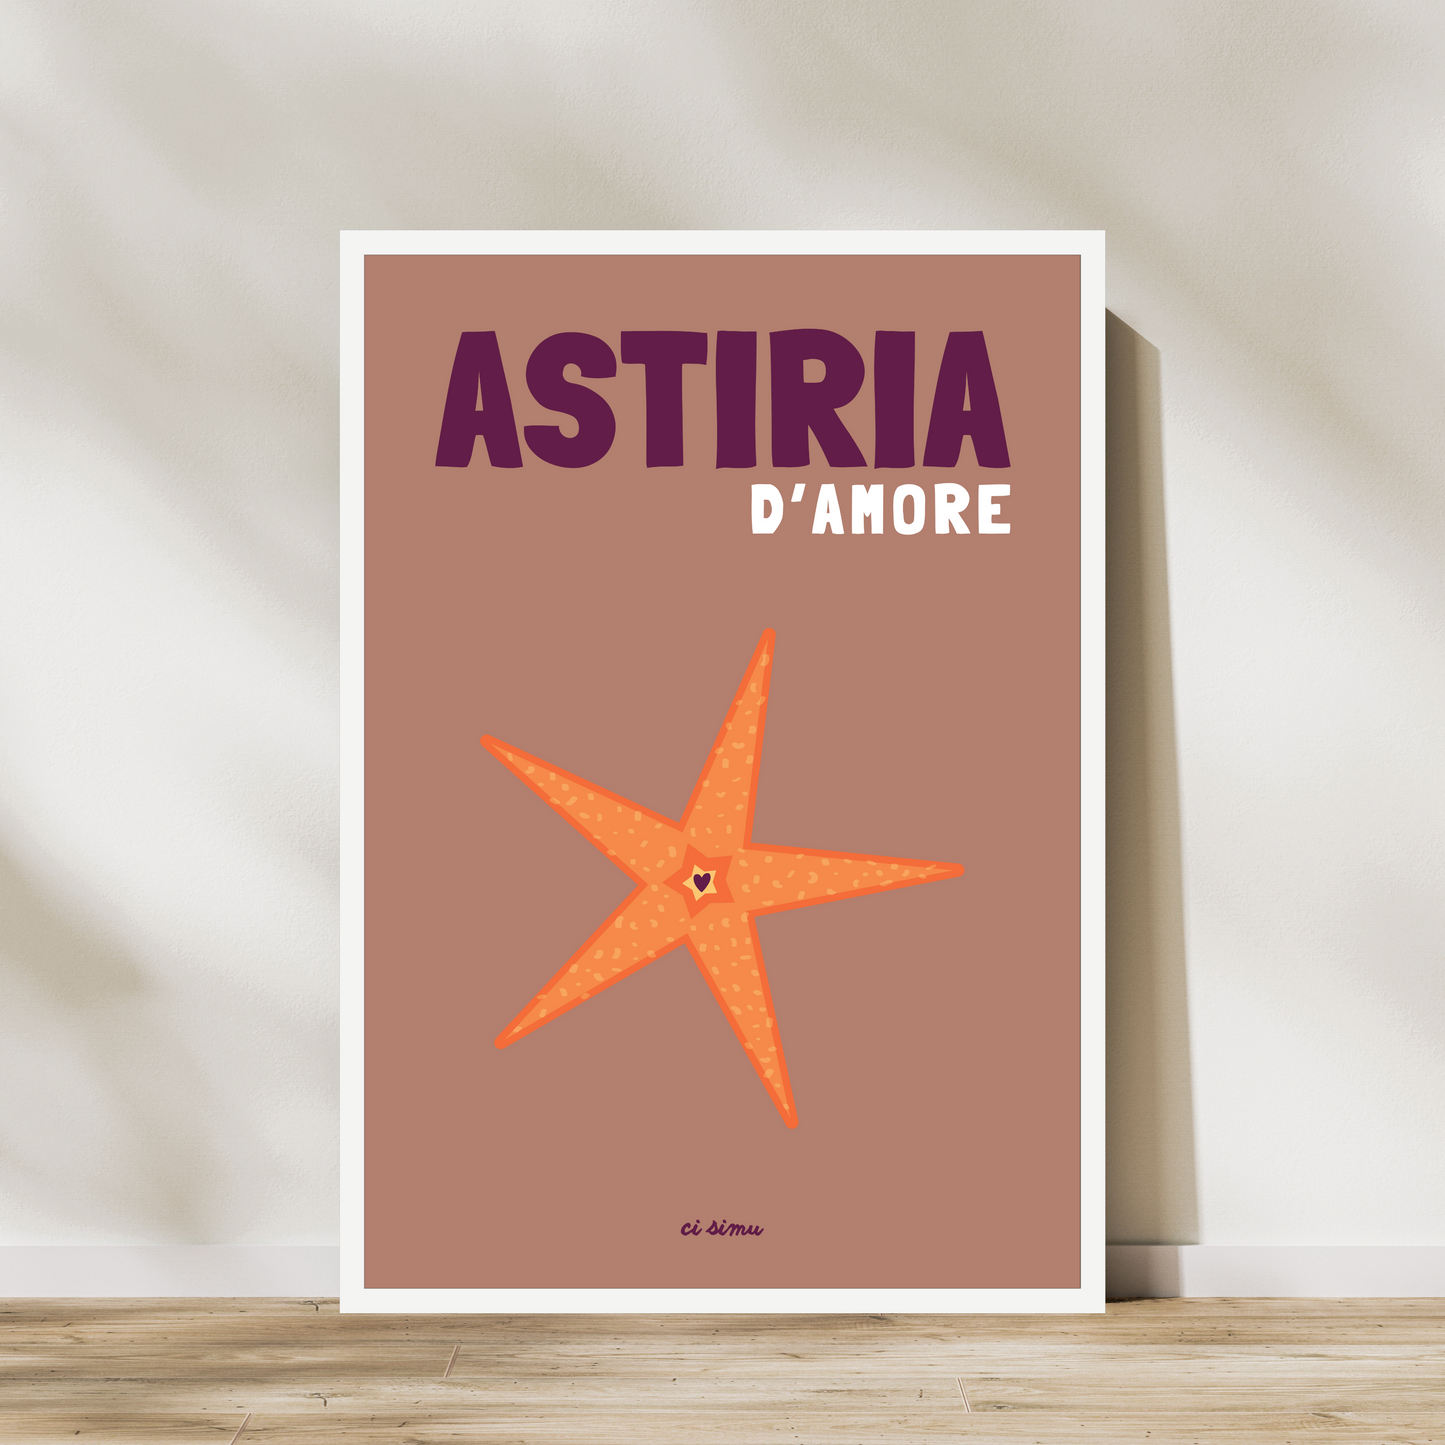 ASTIRIA D'AMORE